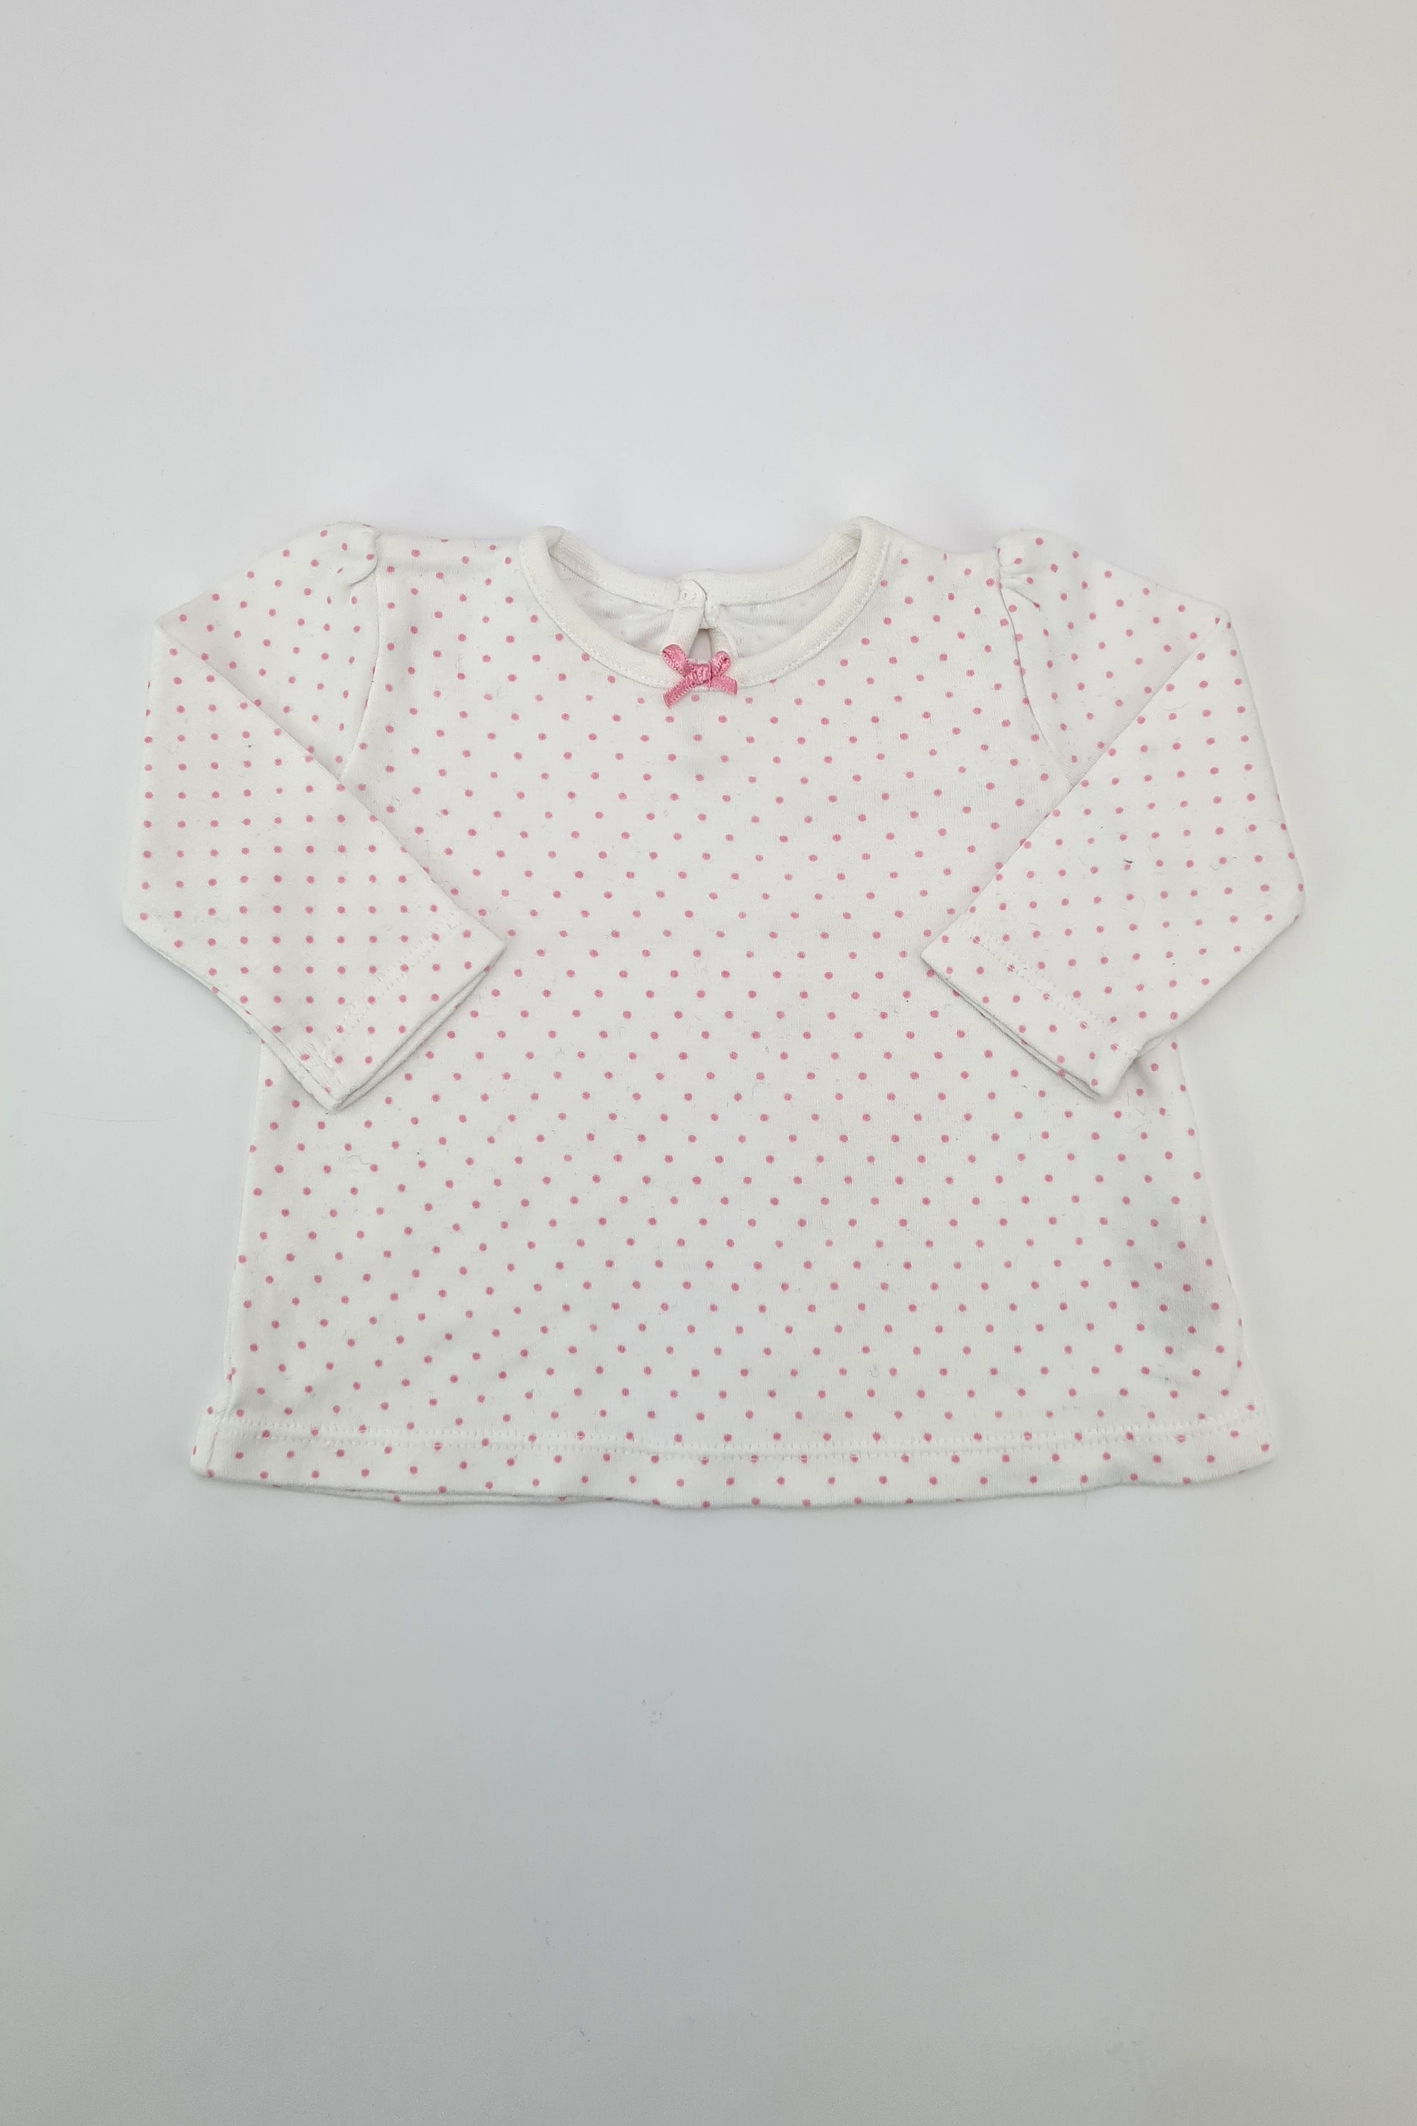 Erste Größe (9 Pfund) – 100 % Baumwolle, rosafarbenes T-Shirt mit Punktmuster (George)